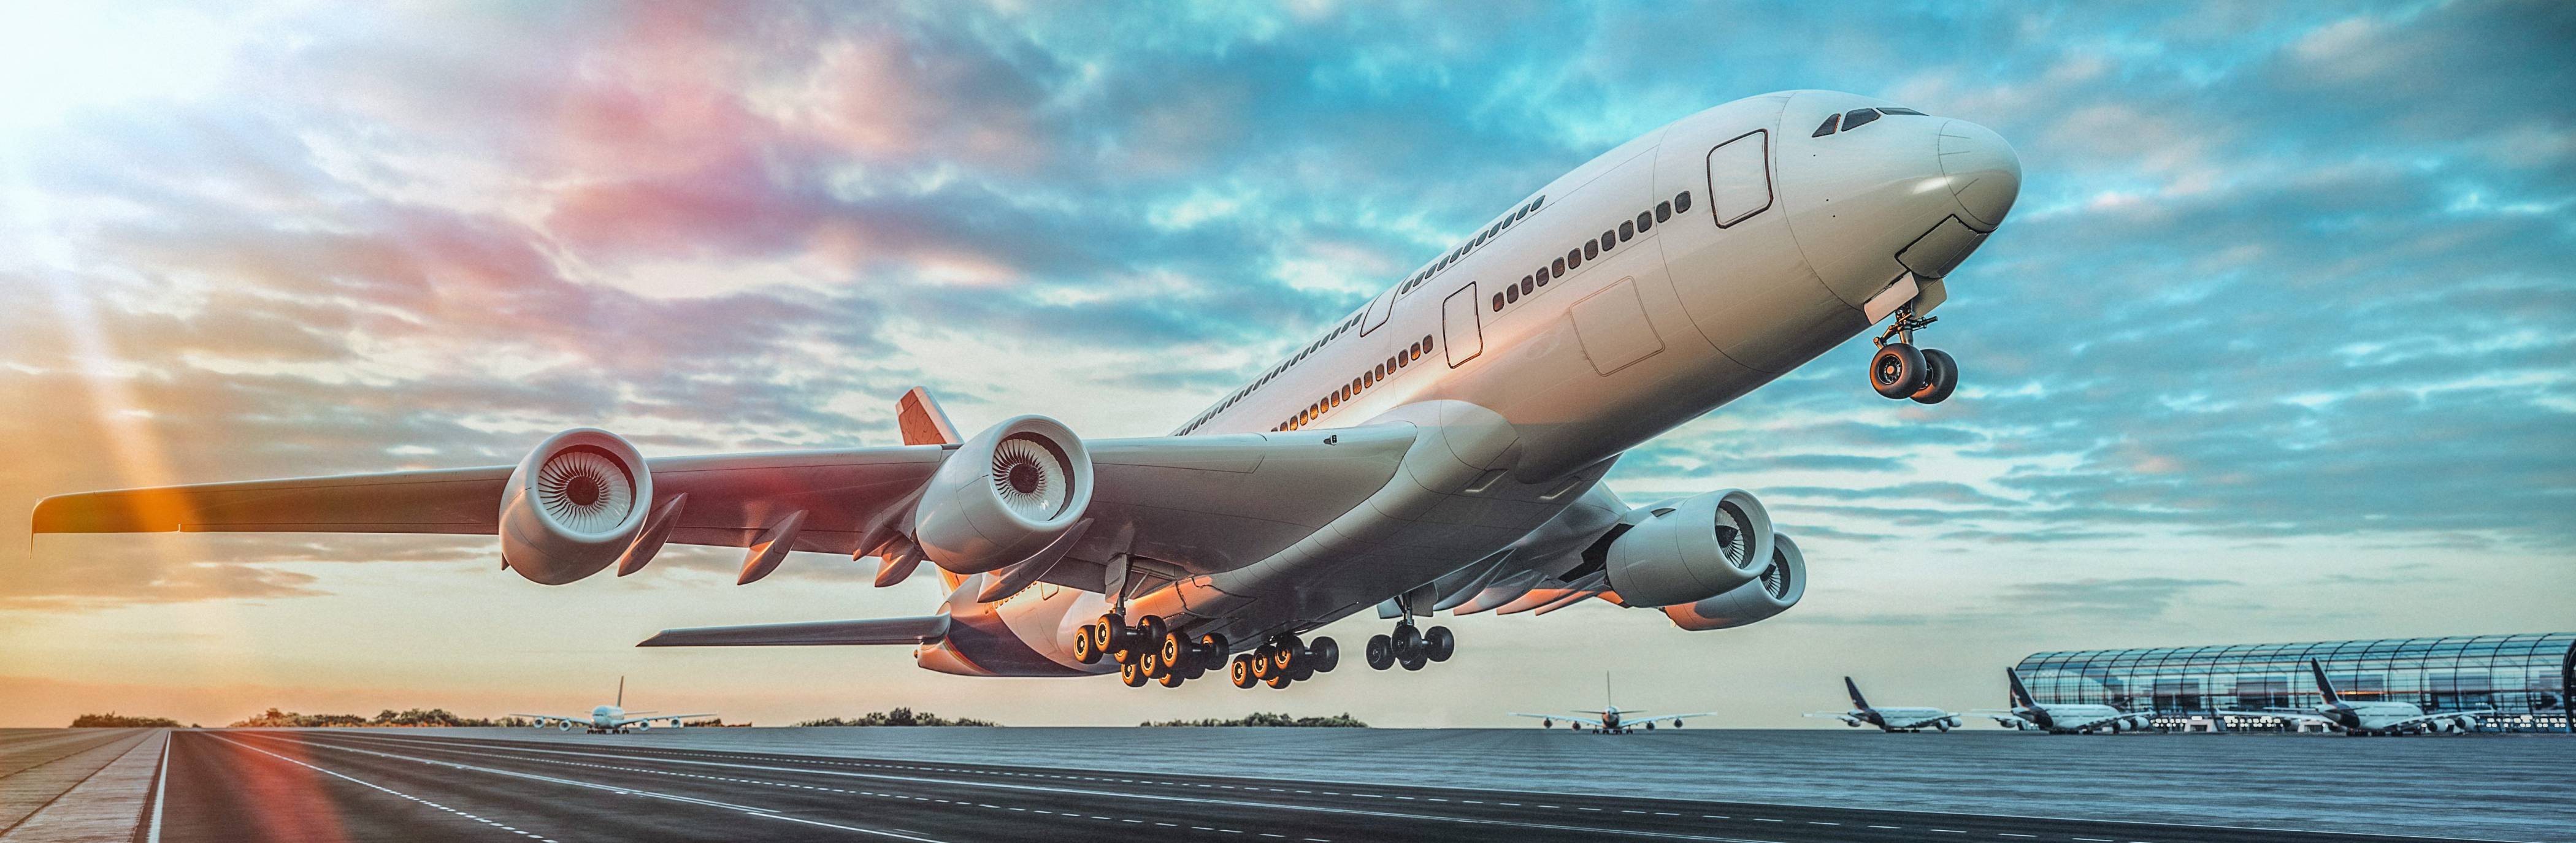 Delamode Baltics siūlo krovinių gabenimo paslaugas oro transportu tiek iš, tiek į bet kurią vietą pasaulyje nuo durų iki durų. 